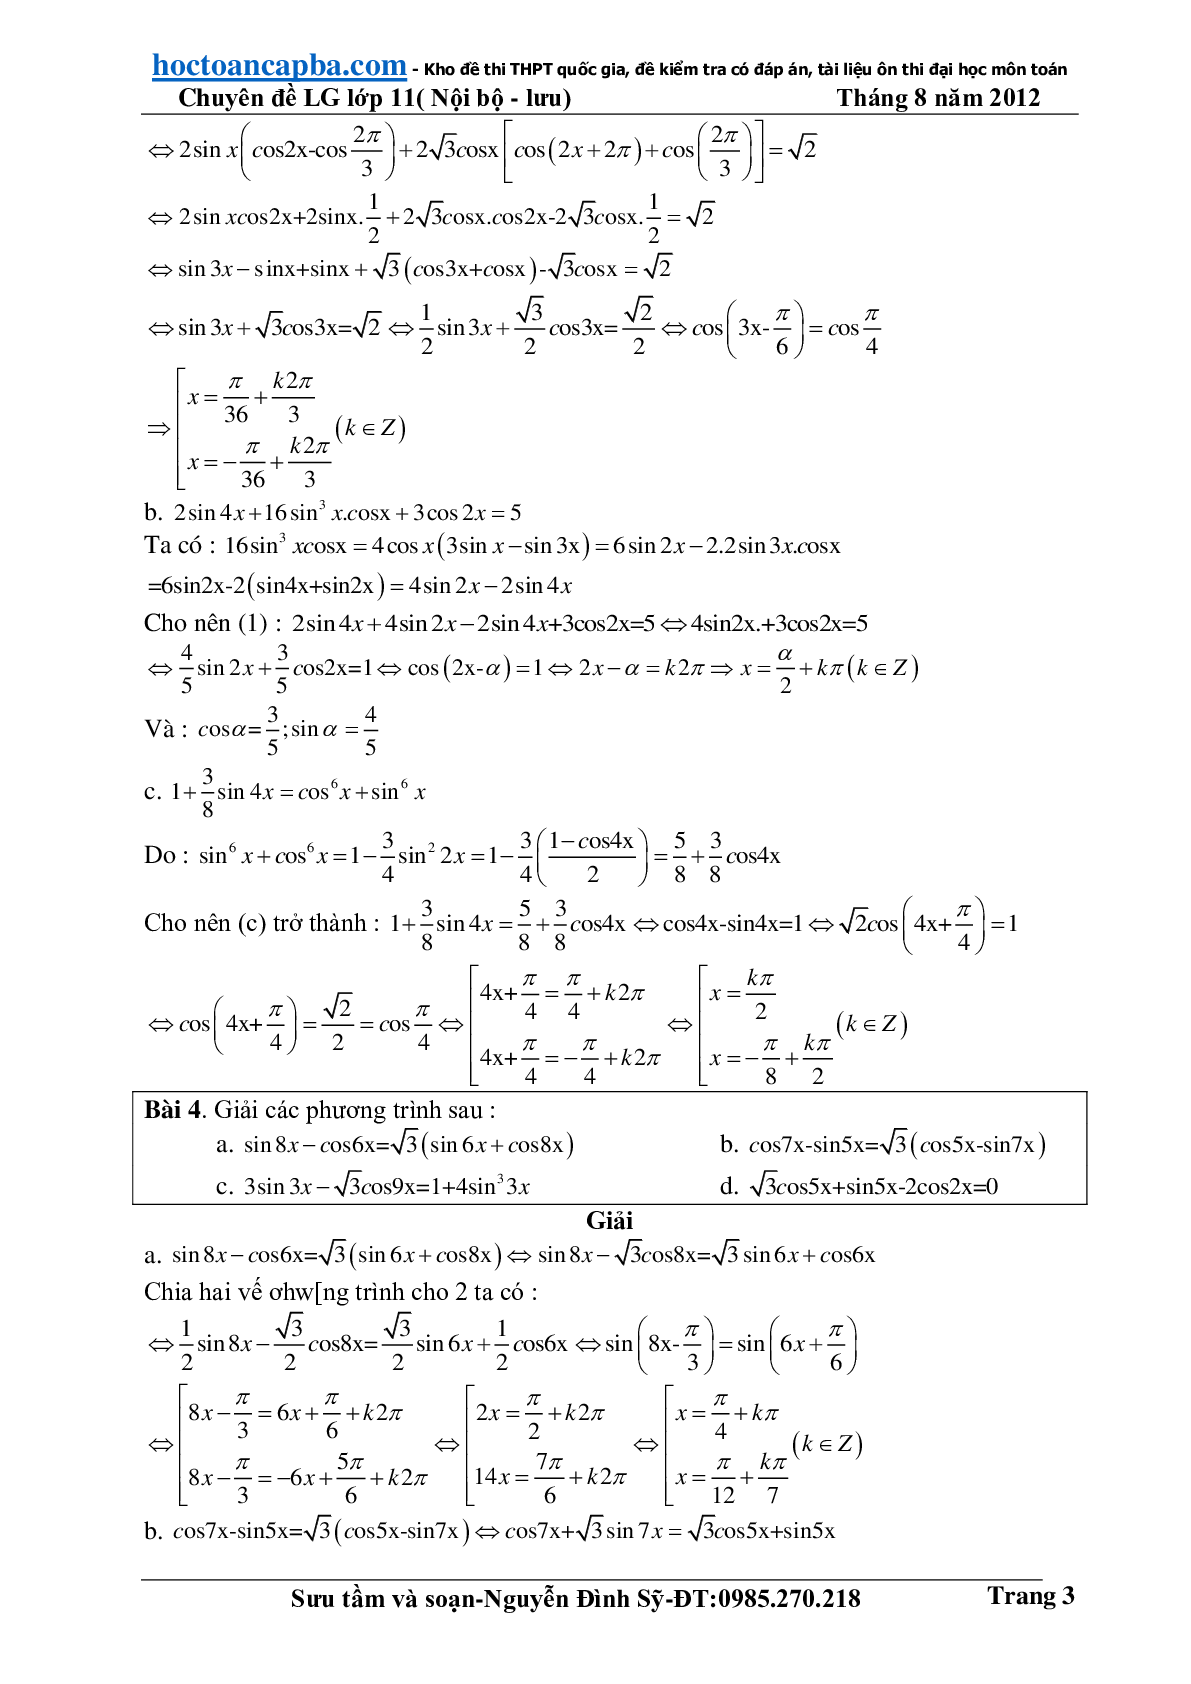 Hướng dẫn giải phương trình lượng giác cơ bản và đơn giản (trang 3)